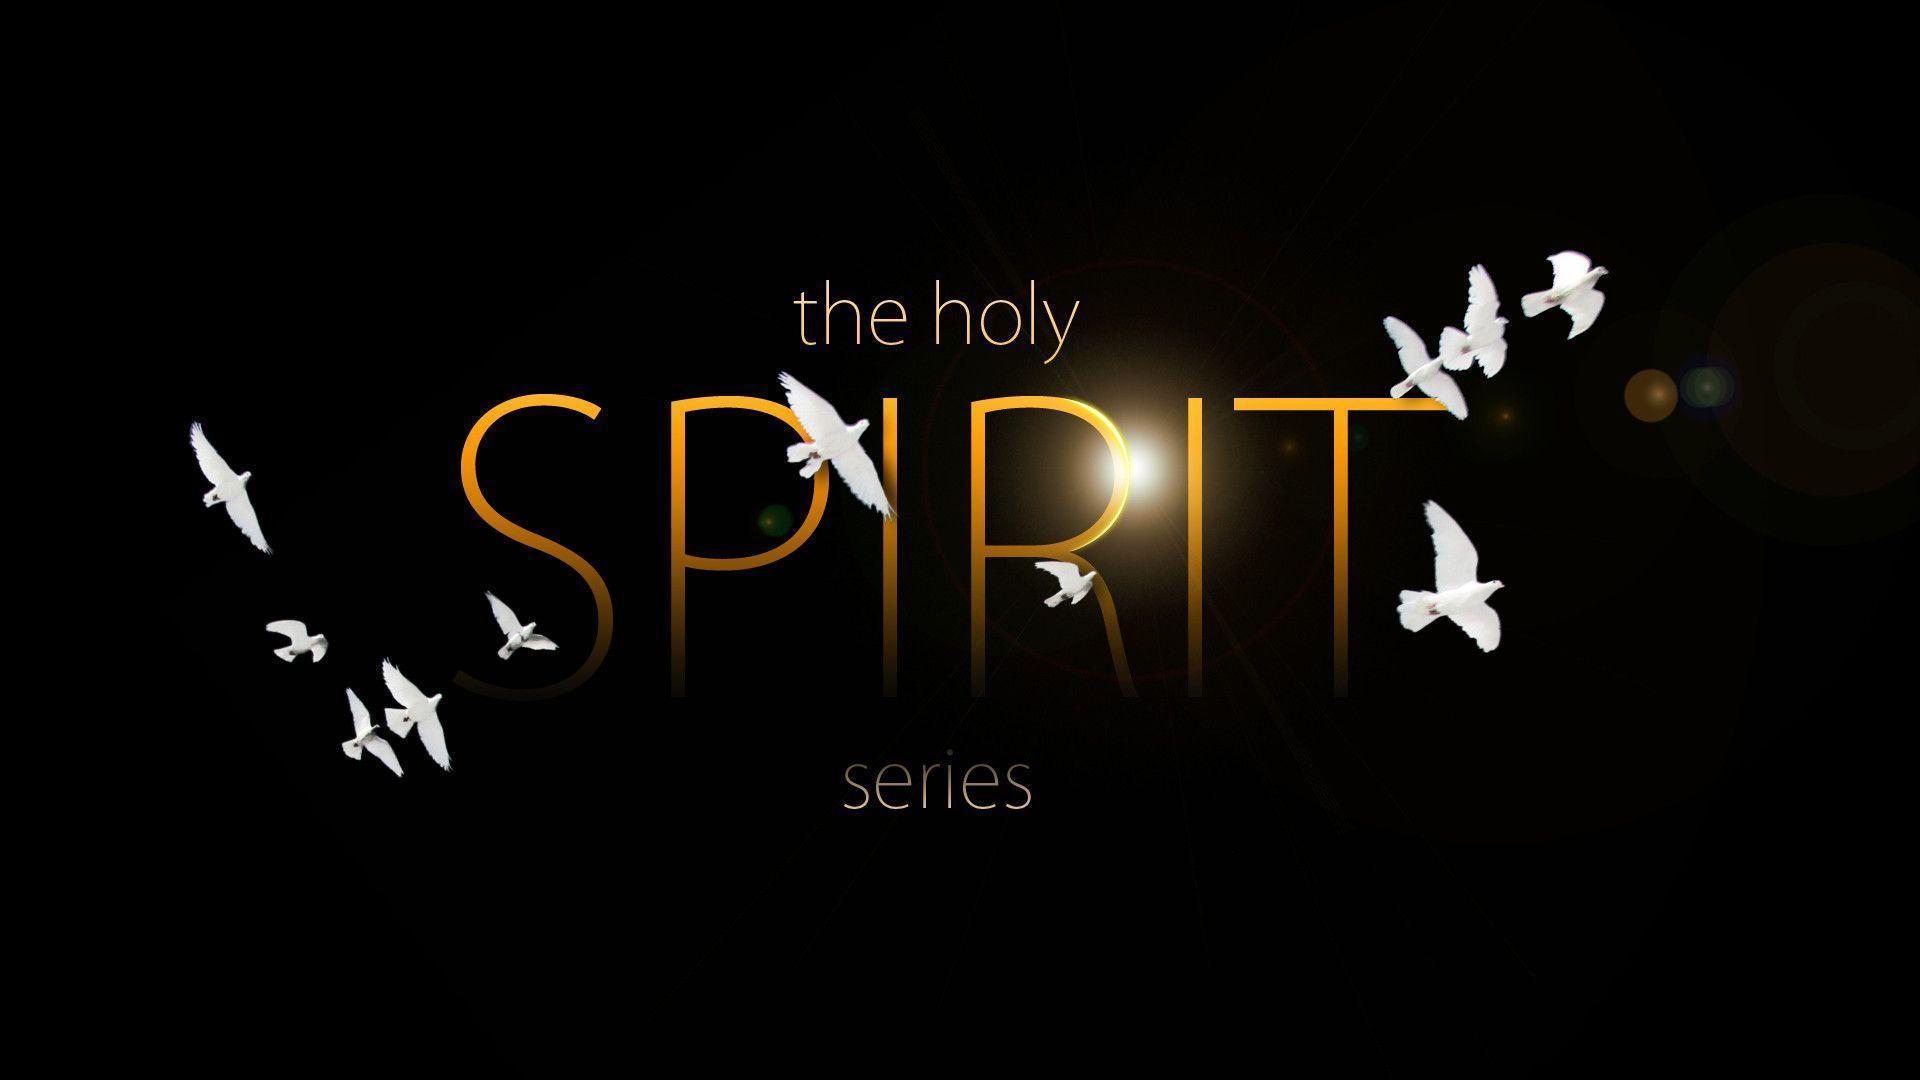 Holy Spirit Wallpaper